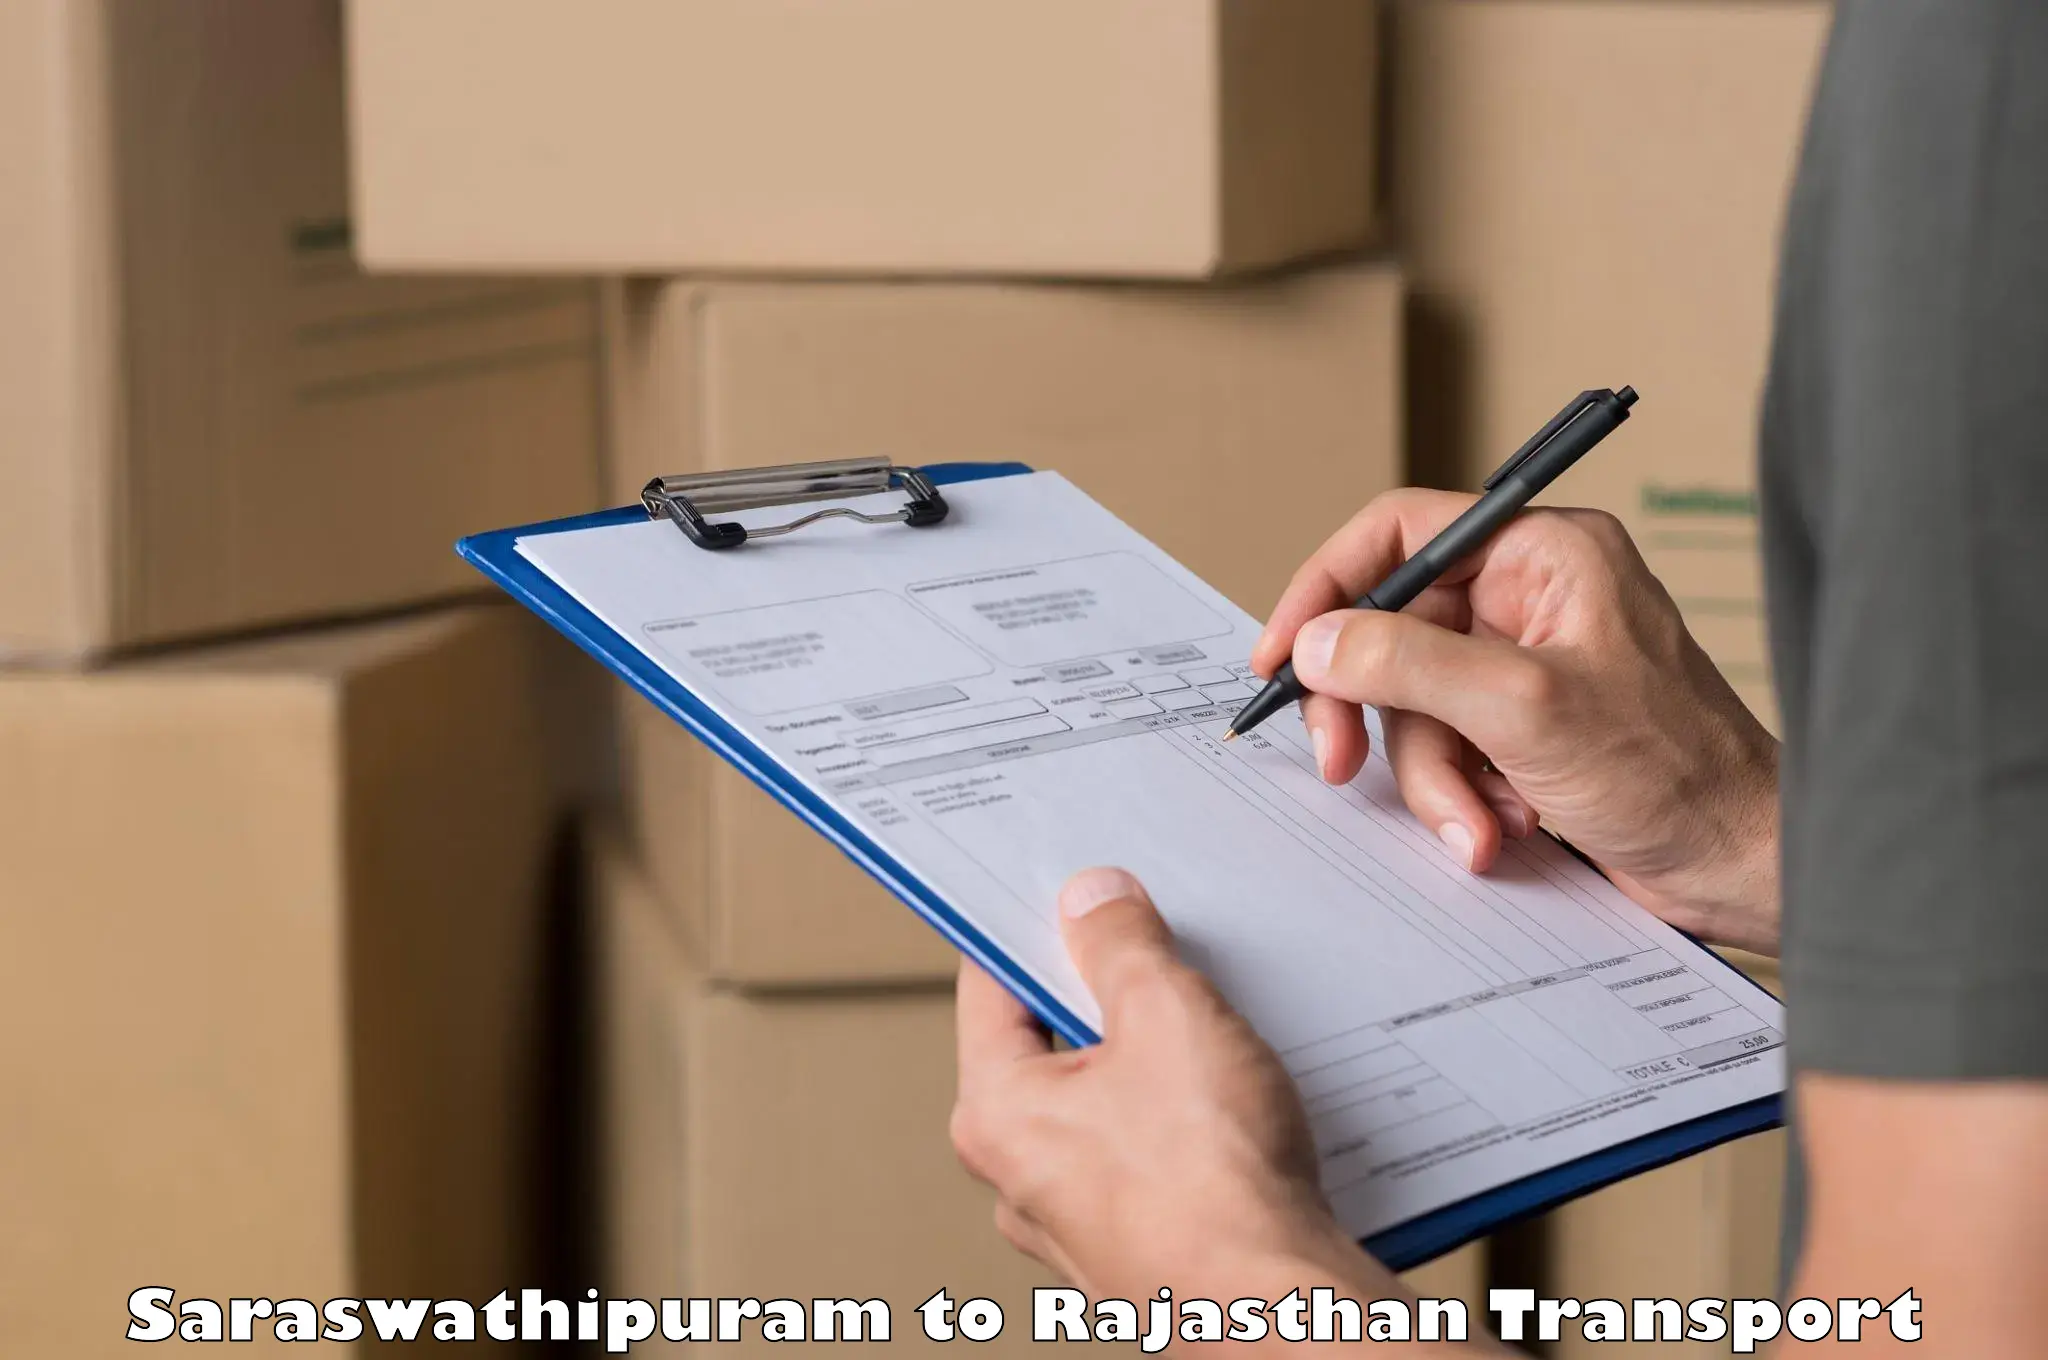 Shipping partner Saraswathipuram to Jodhpur